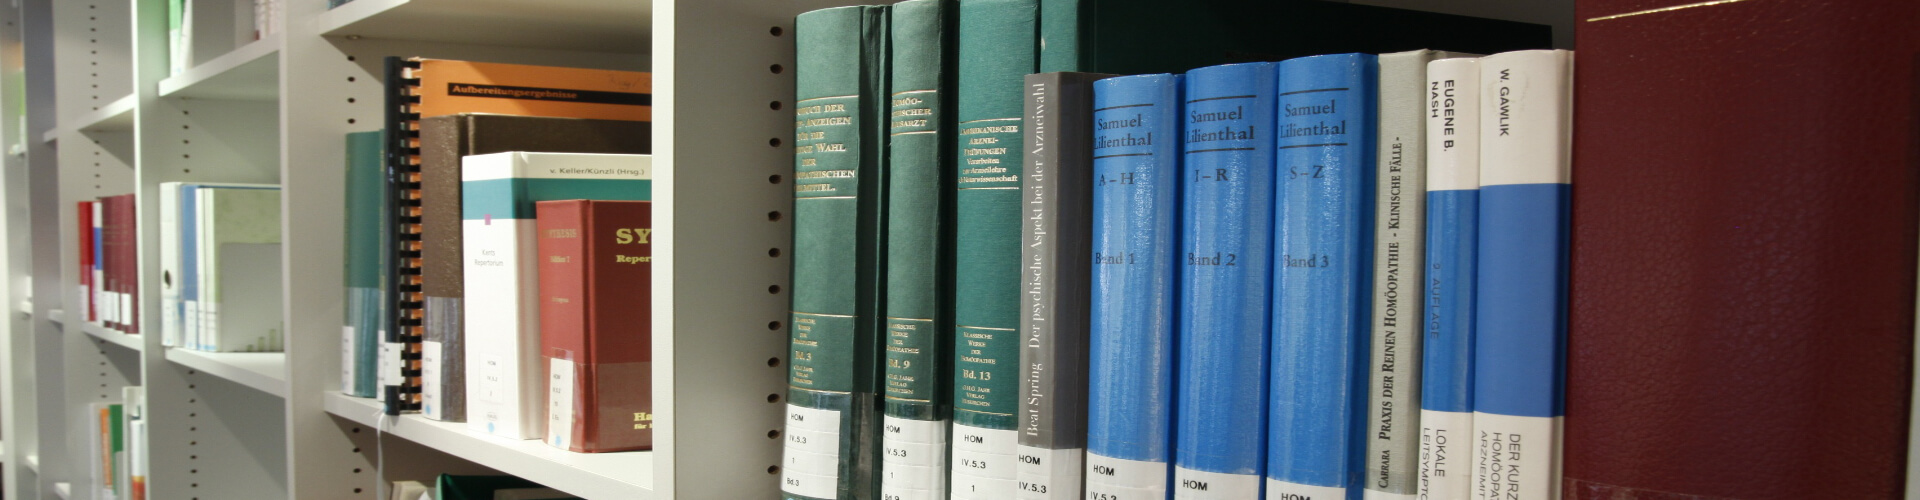 Sach- und Fachbücher in einer Universitäts-Bibliothek, die eine Sachbuch-Übersetzung bzw. Fachbuch-Übersetzung erhalten haben